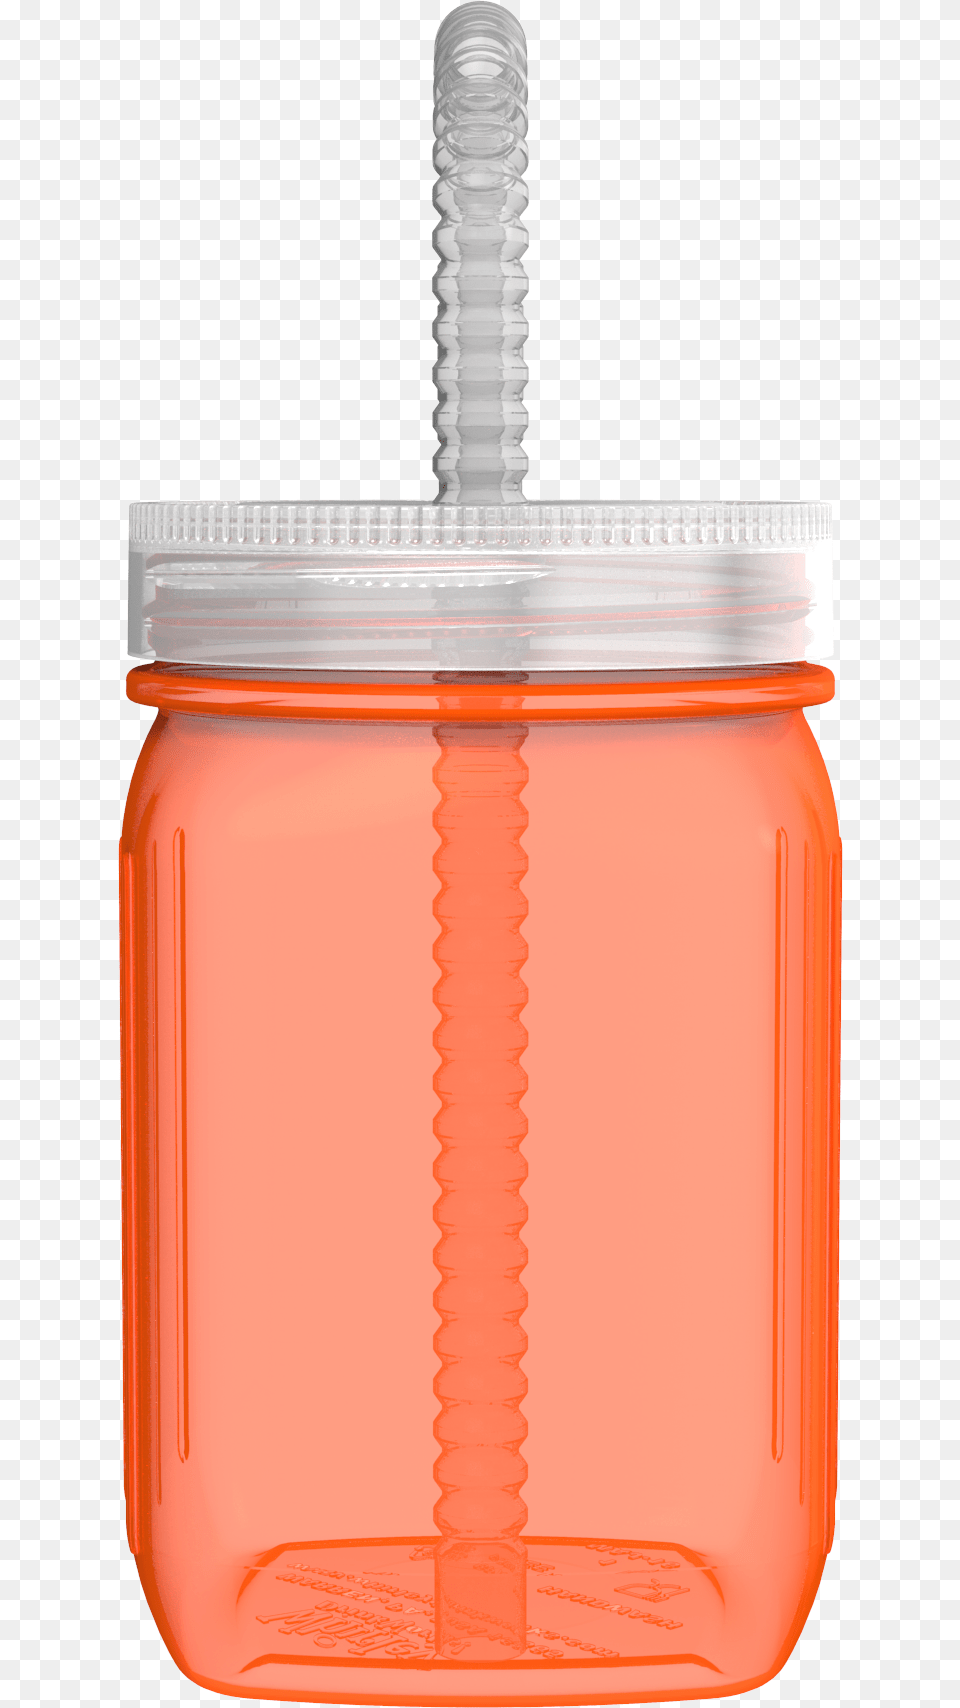 Water Bottle, Jar, Food, Ketchup Free Png